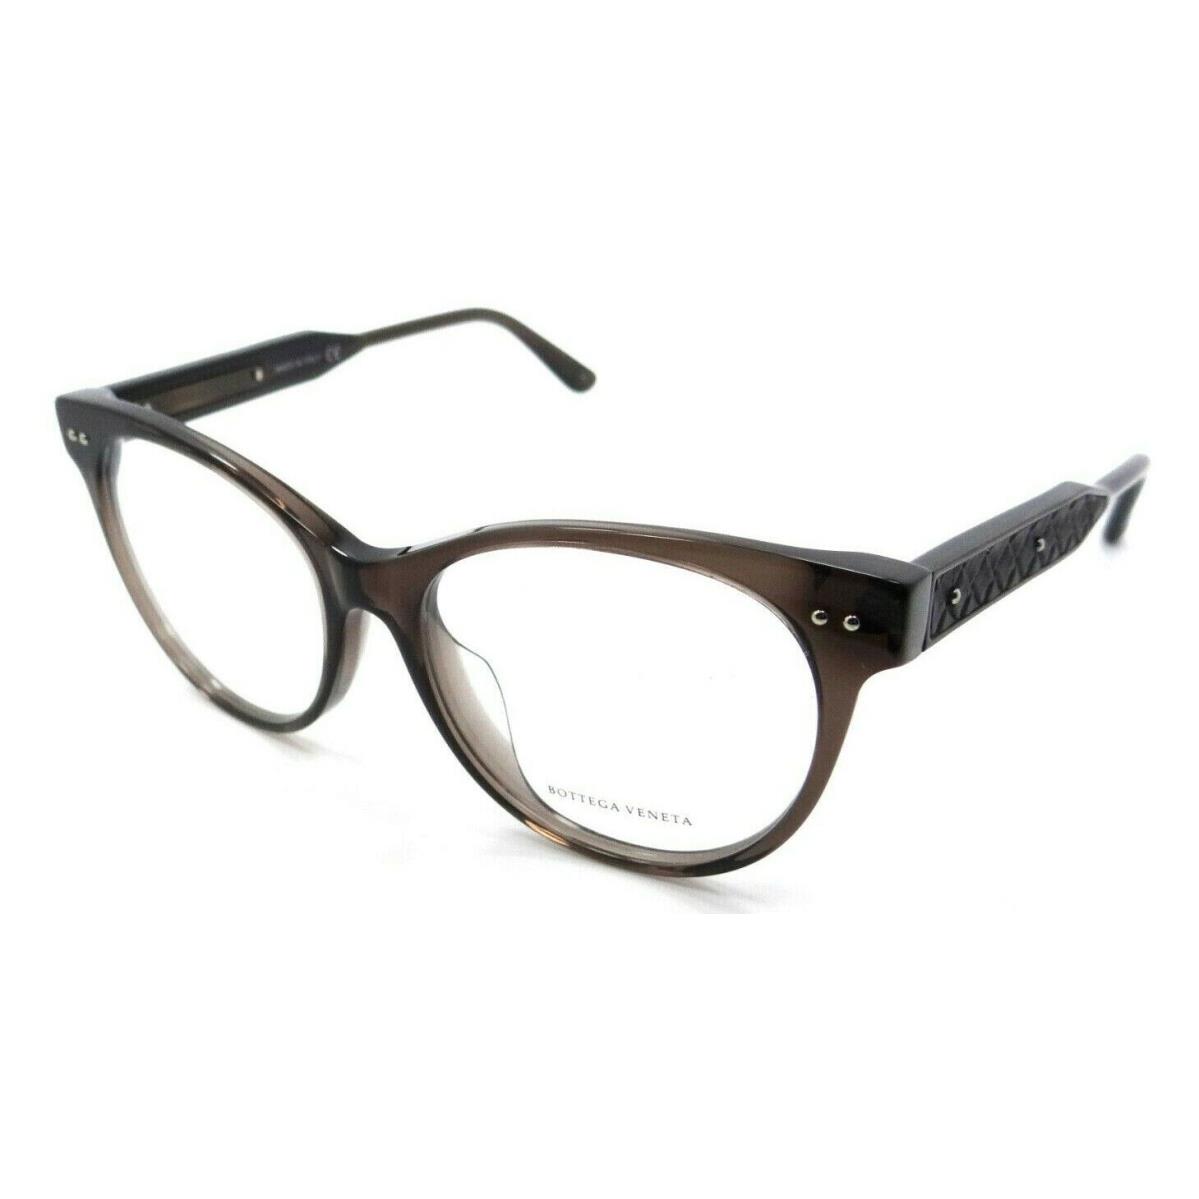 Bottega Veneta Eyeglasses Frames BV0017OA 003 52-16-145 Brown Italy Asian Fit